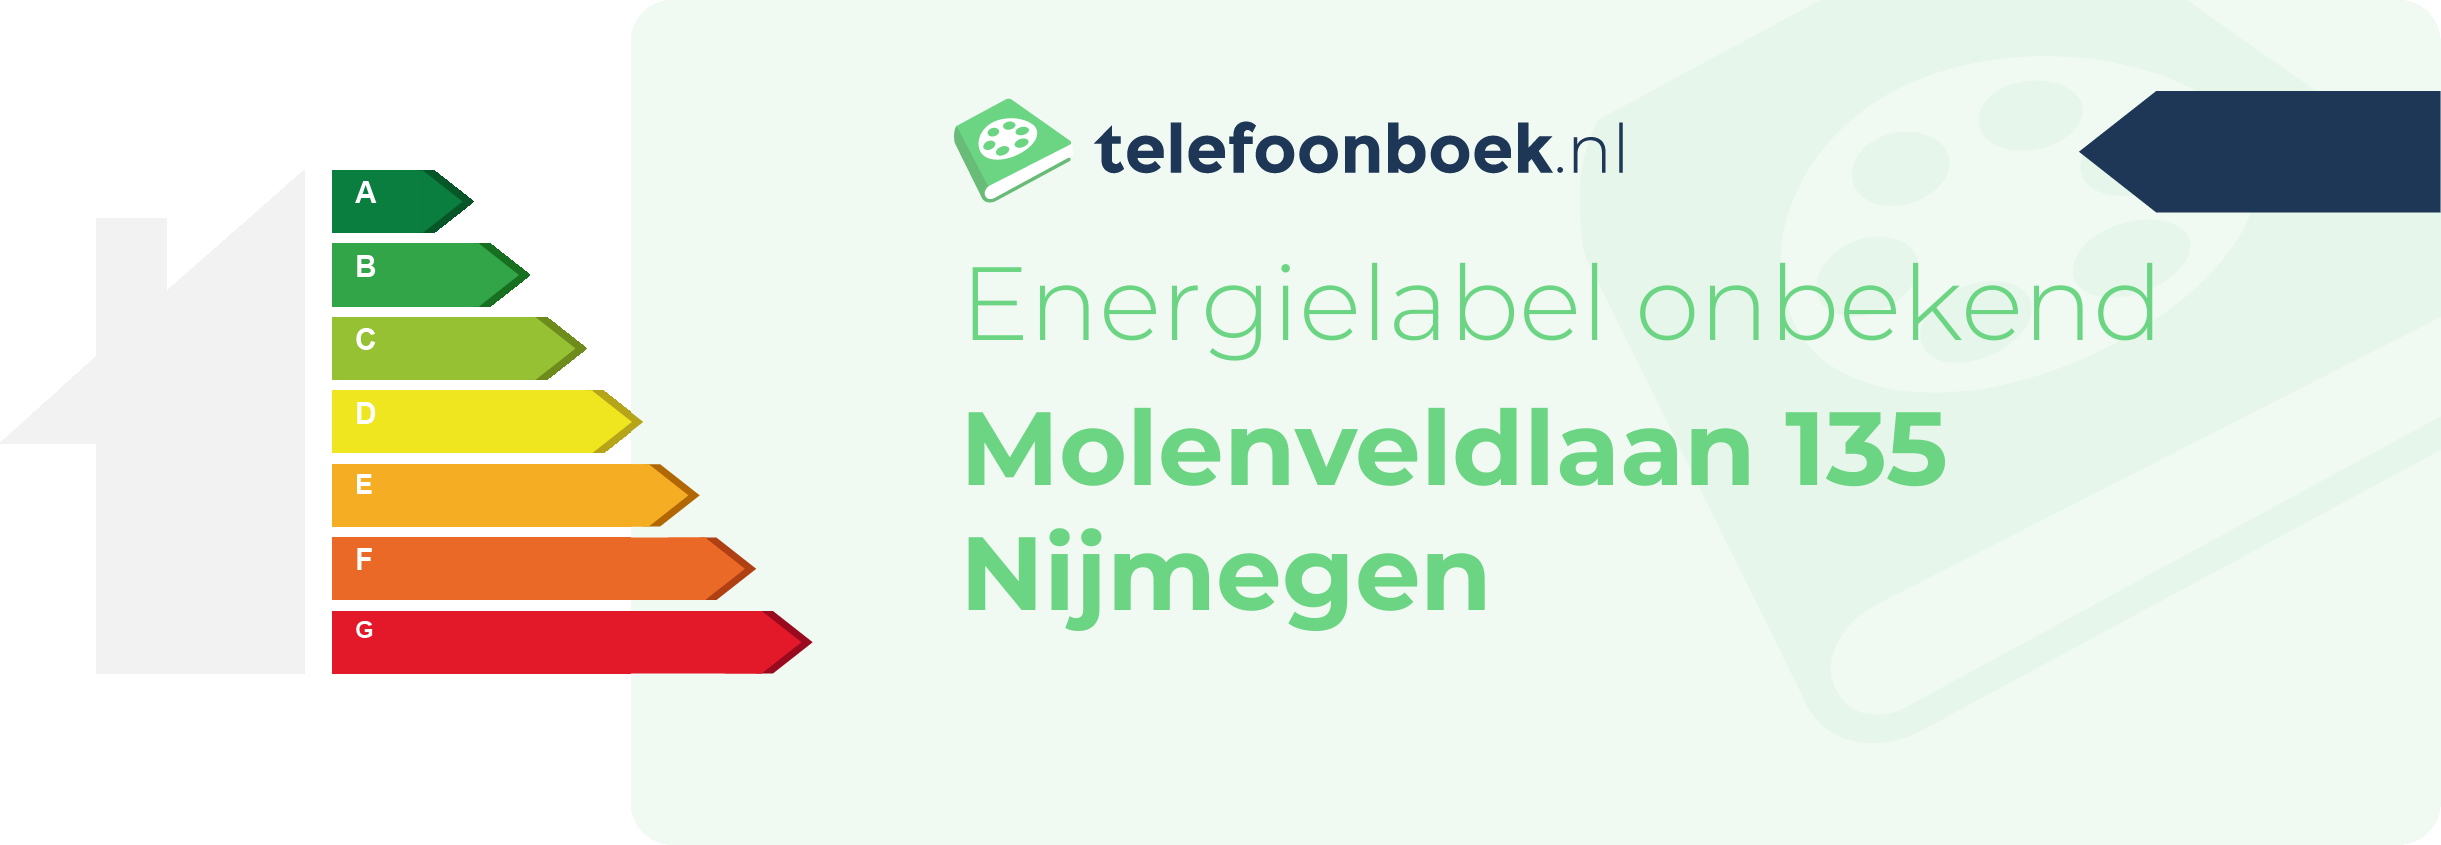 Energielabel Molenveldlaan 135 Nijmegen